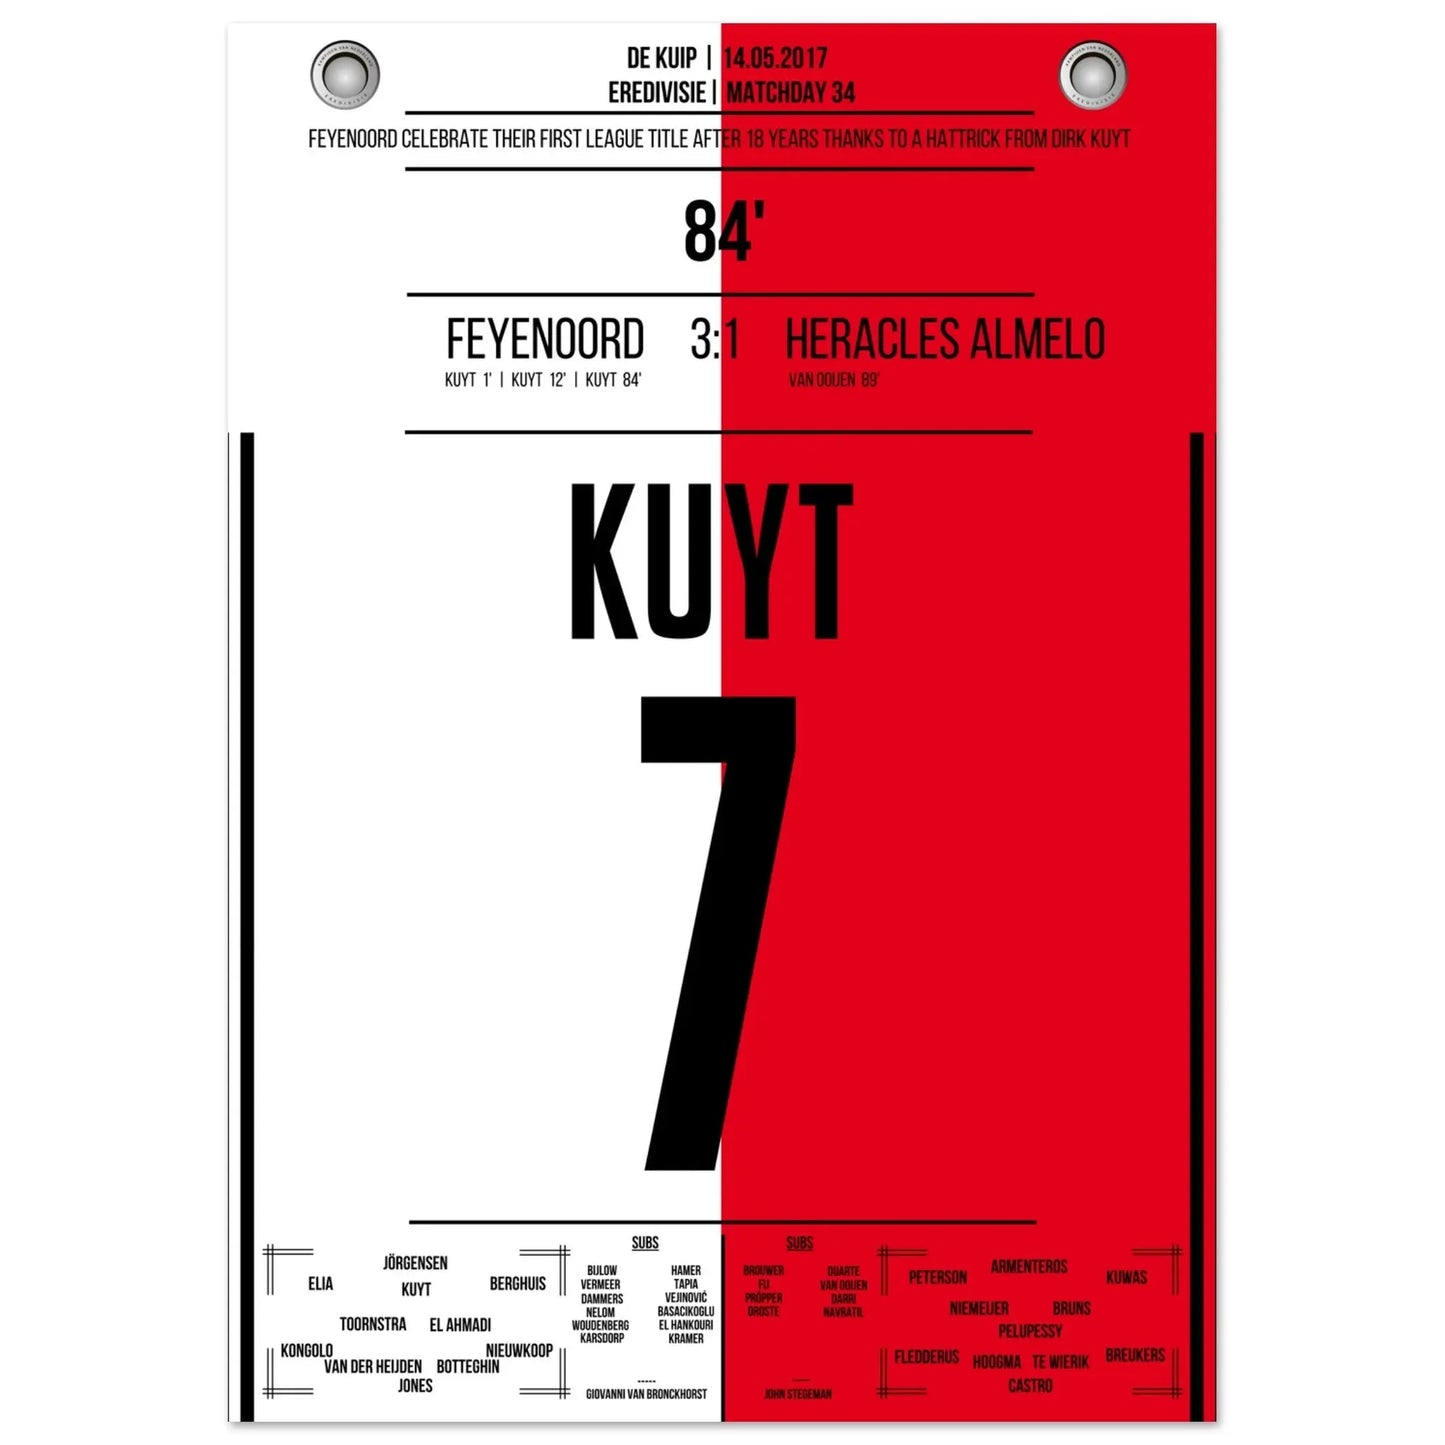 Hat-trick de Kuyt para el primer título de campeonato del Feyenoord en 18 años